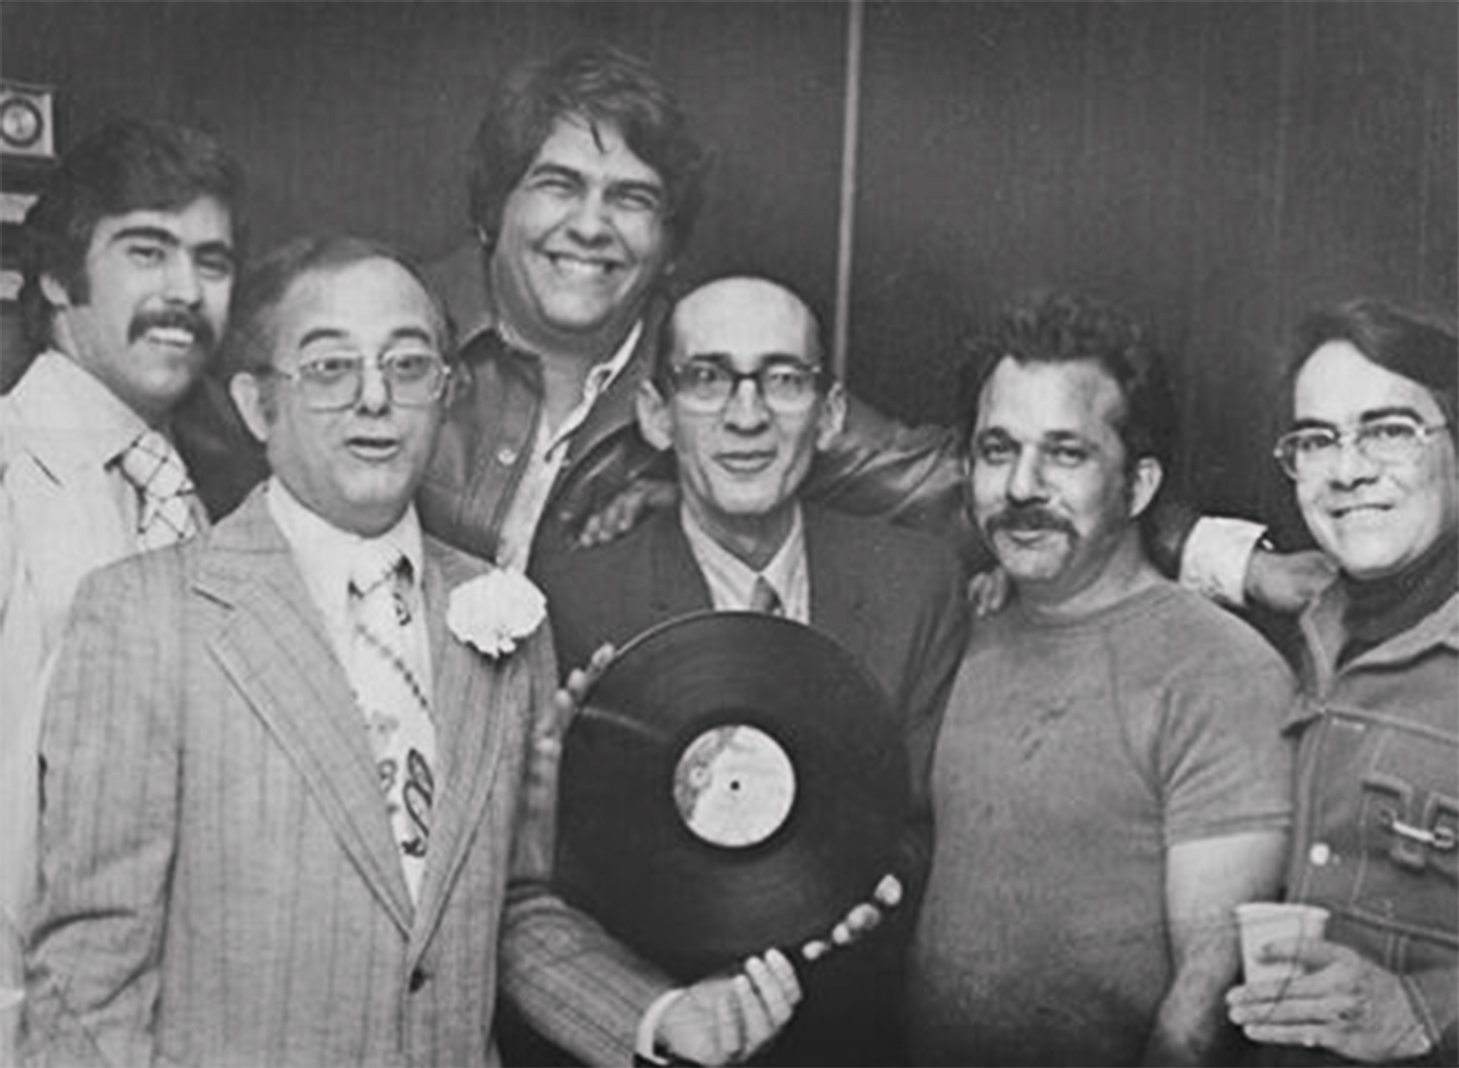 From Left to Right: Aurelio Morales, Carlos Garcia, Tony Moreno, Cheo, Julio Gonzalez, Dagoberto Fernandez (Drago)